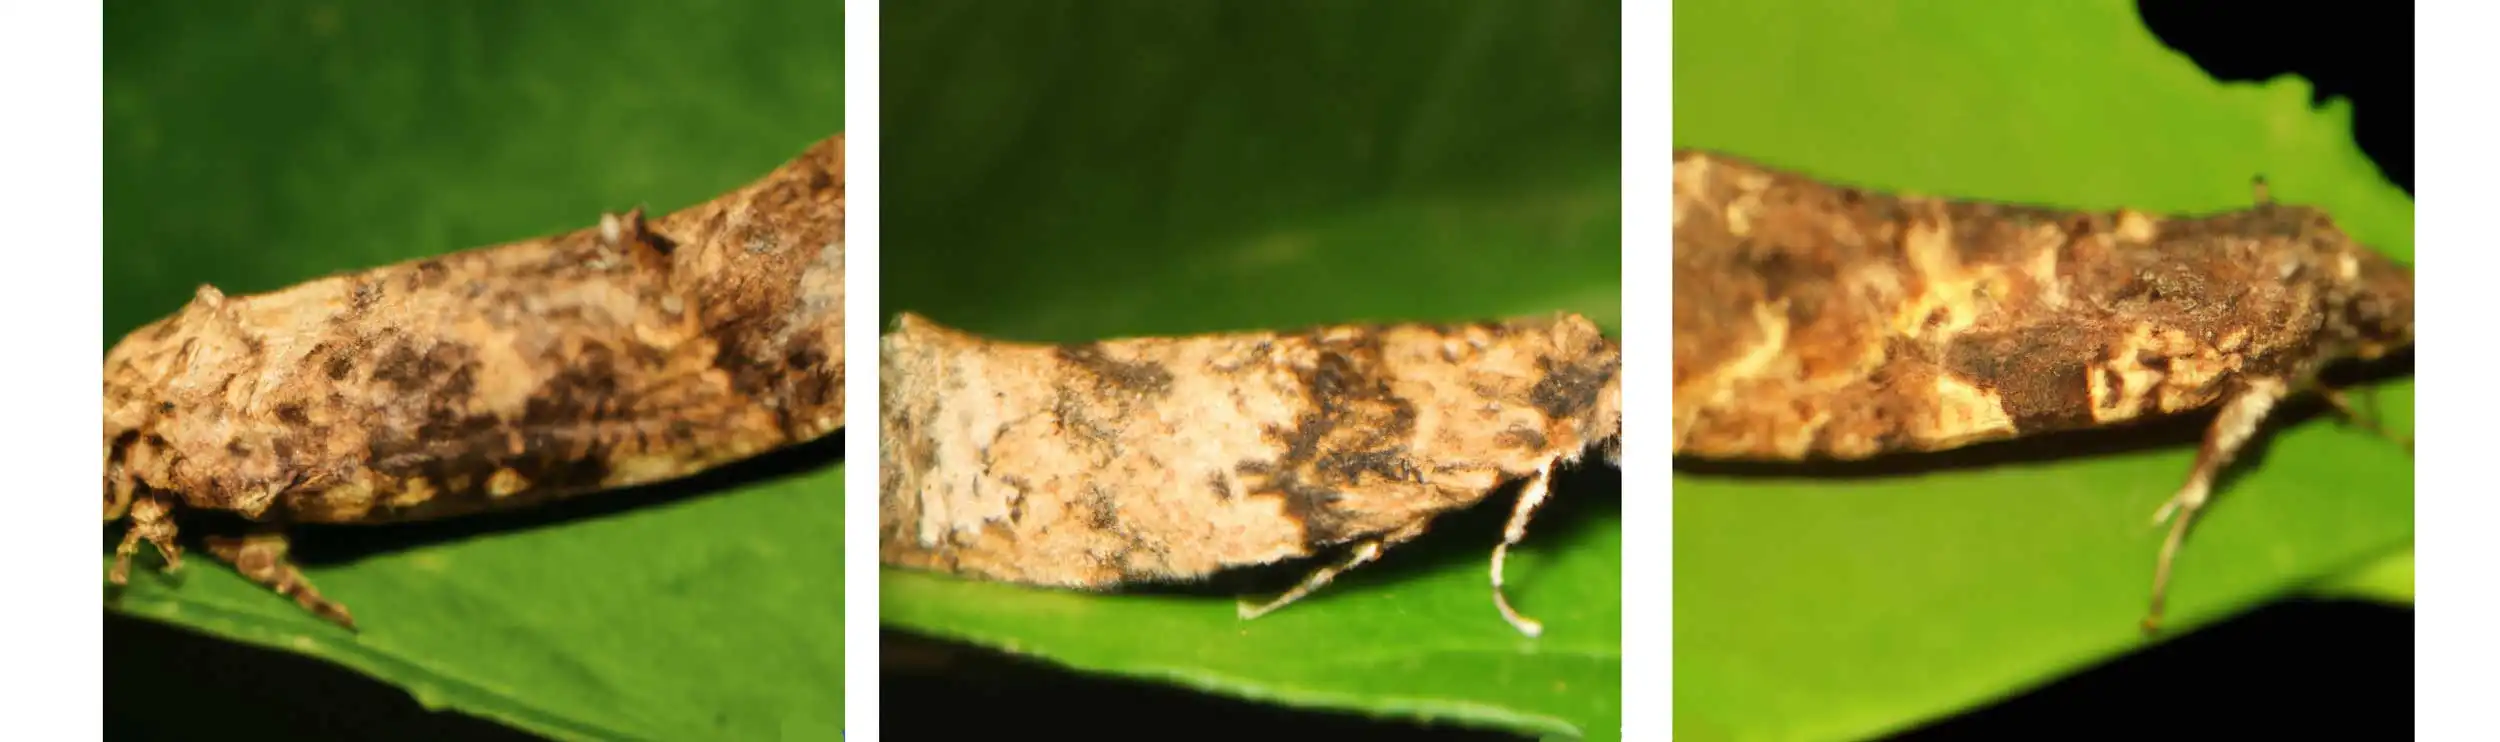 False codling moth, Thaumatotibia leucotreta Adult - Petiolej Pro: Monitoring and Detection of FCM